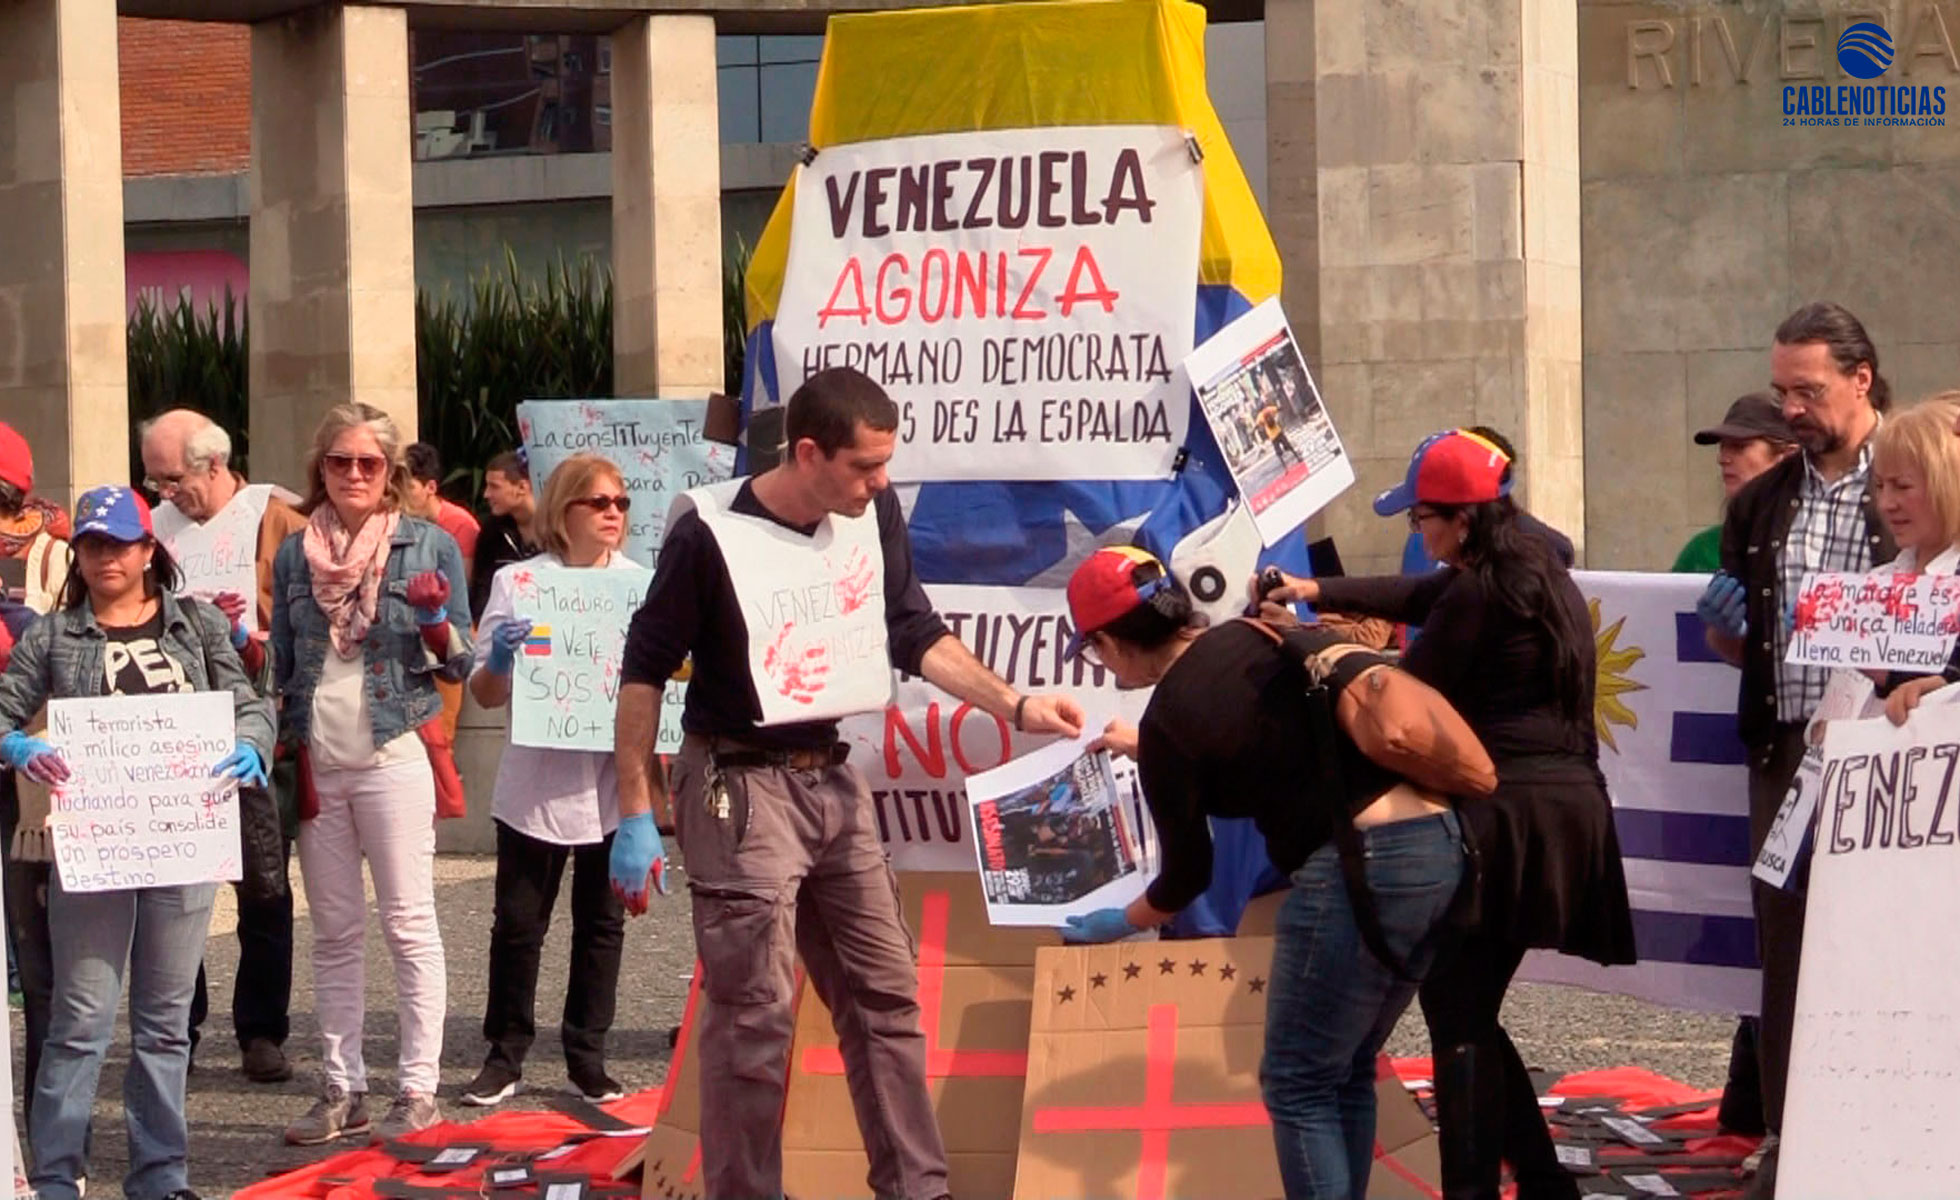 29131641Contituyente-Protesta-Venezuela-Efe